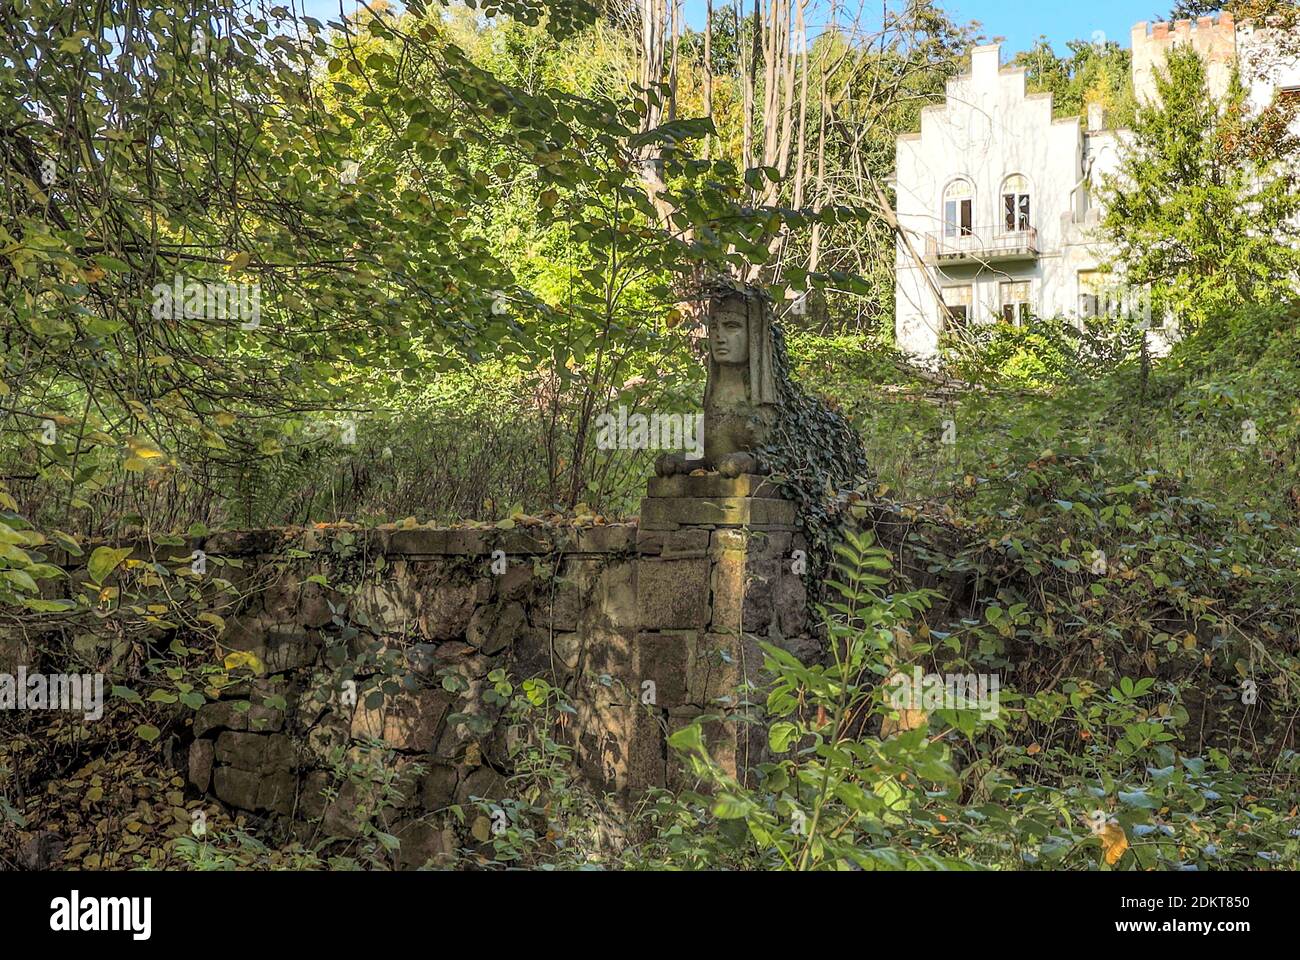 Eine ägyptische Steinfigur blickt in den bewachsenen Garten. Teile des einst stattlichen Gebäudes sind im Hintergrund zu sehen. Schloss Eggersdorf. Stockfoto